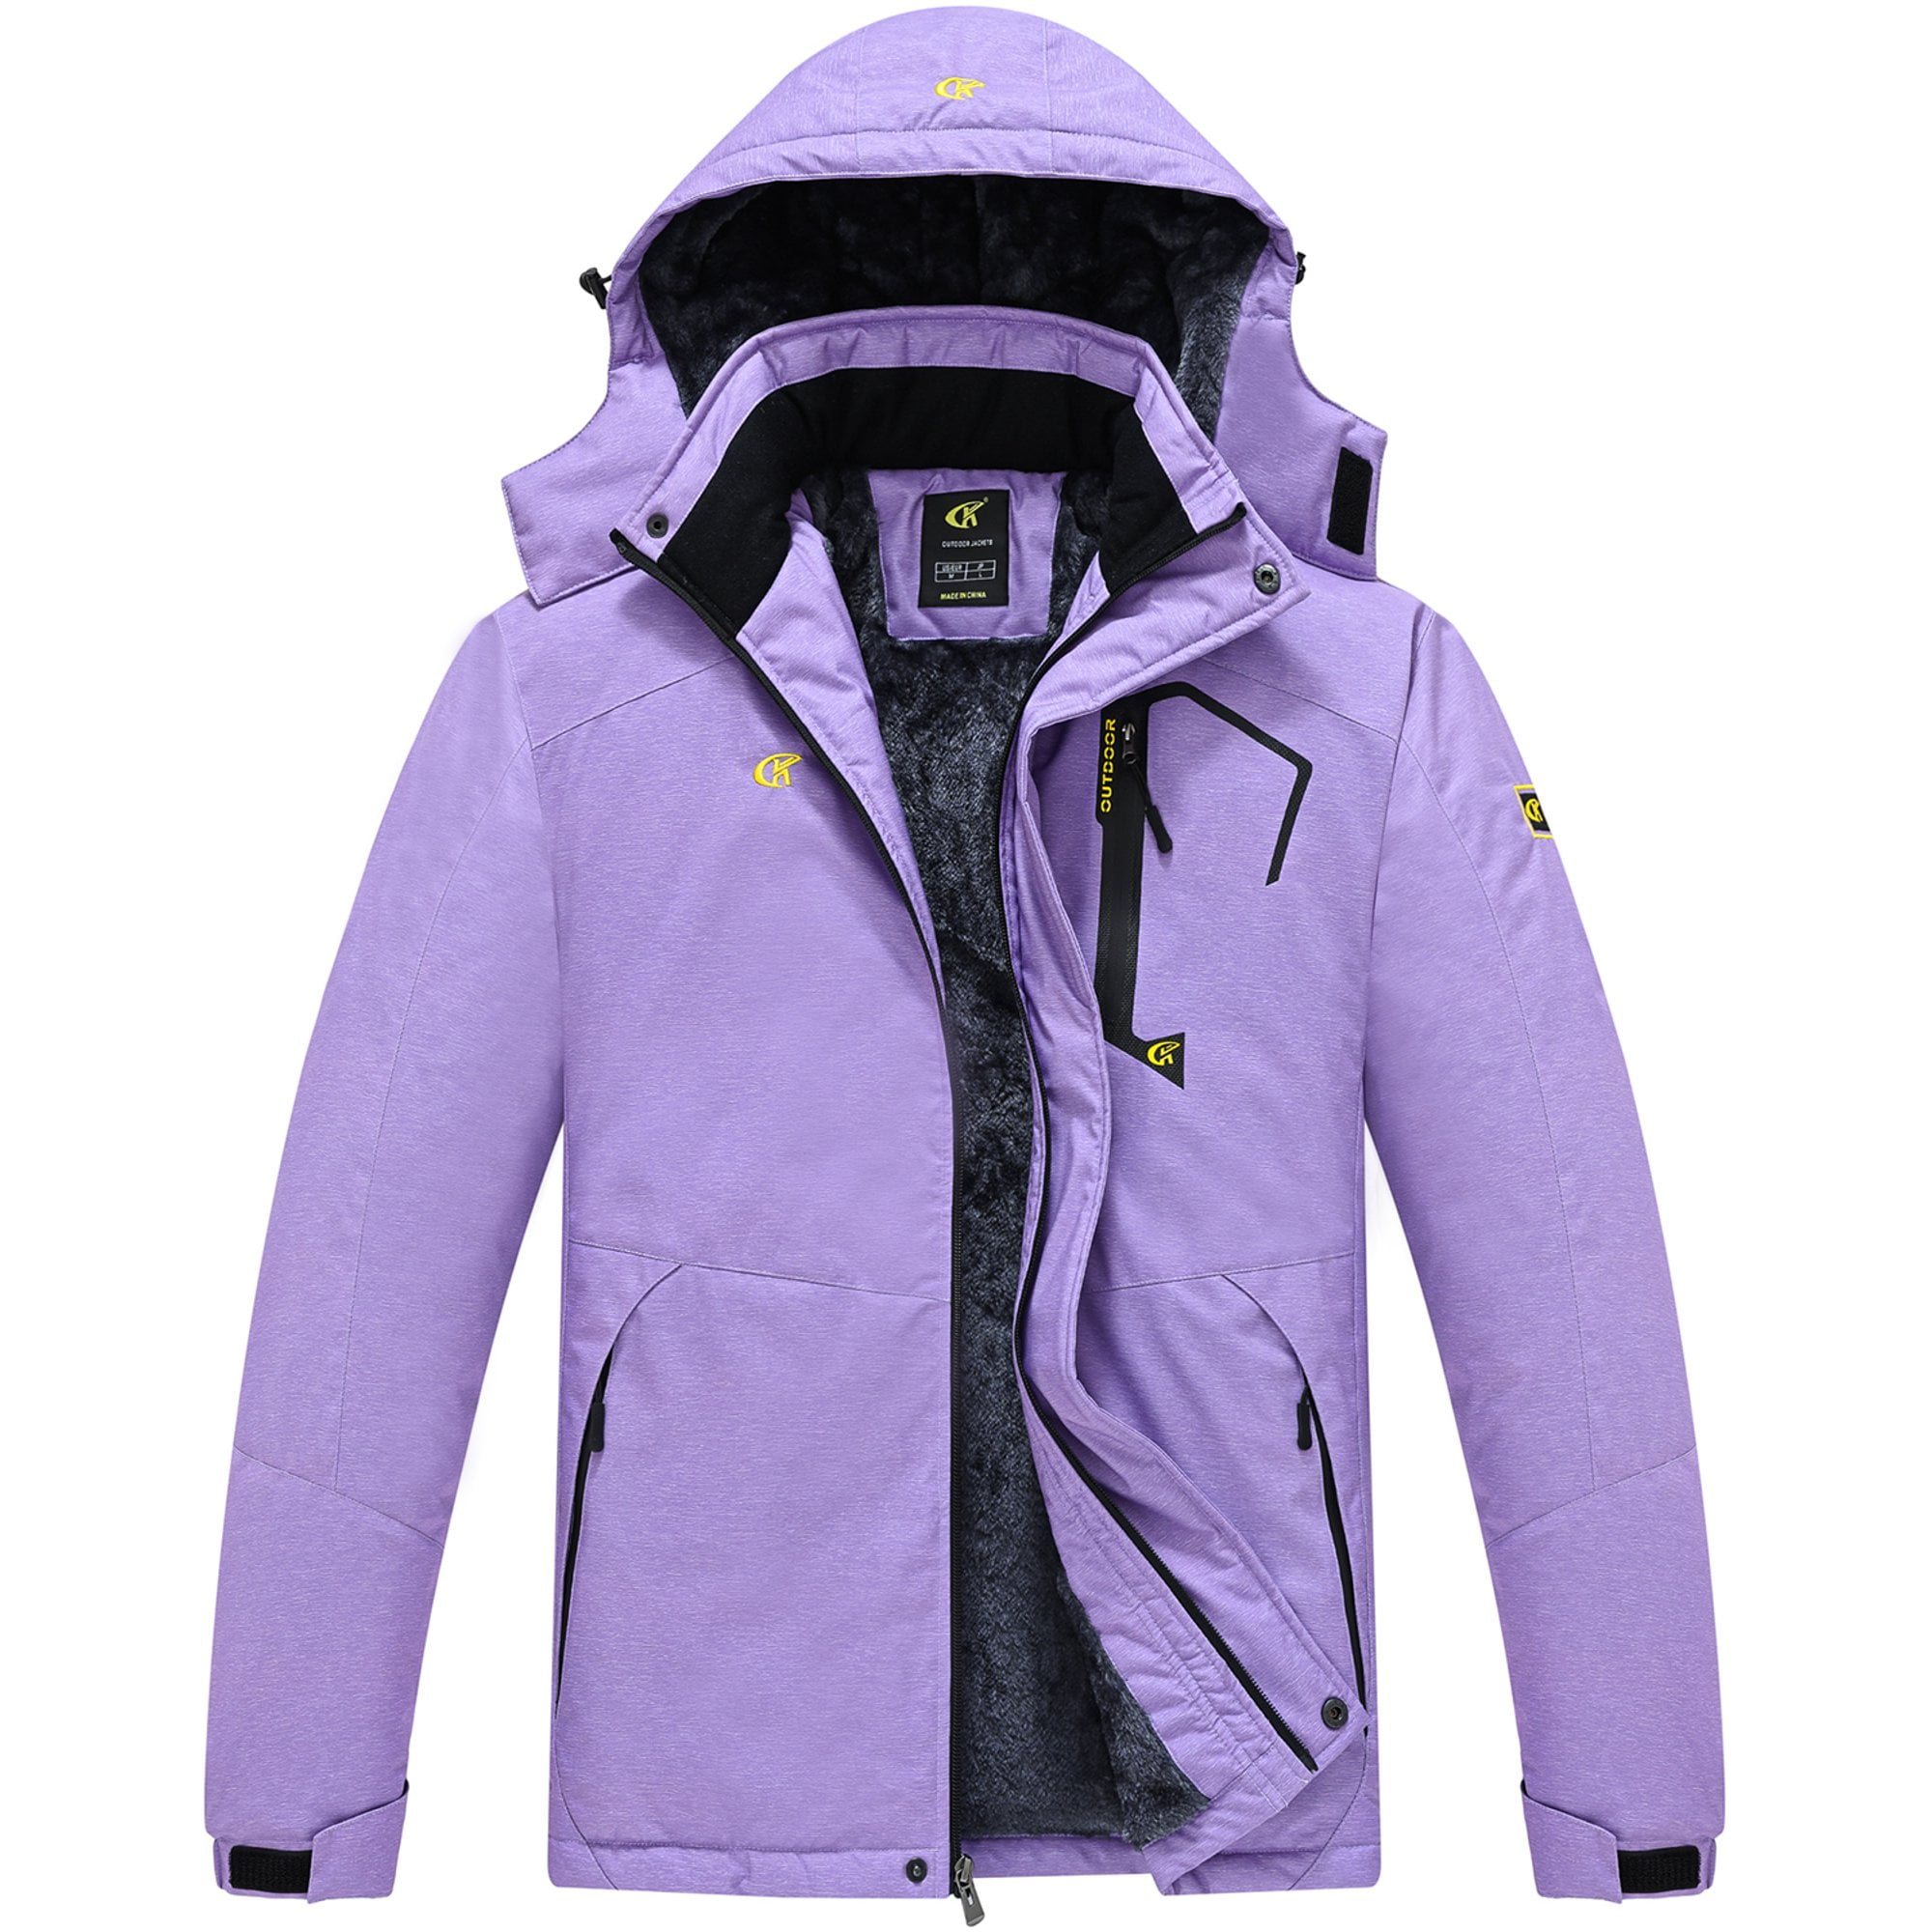 YuKaiChen Men's Waterproof Fleece Snowboard Jacket Windproof Warm Ski Coat Multi-Pockets